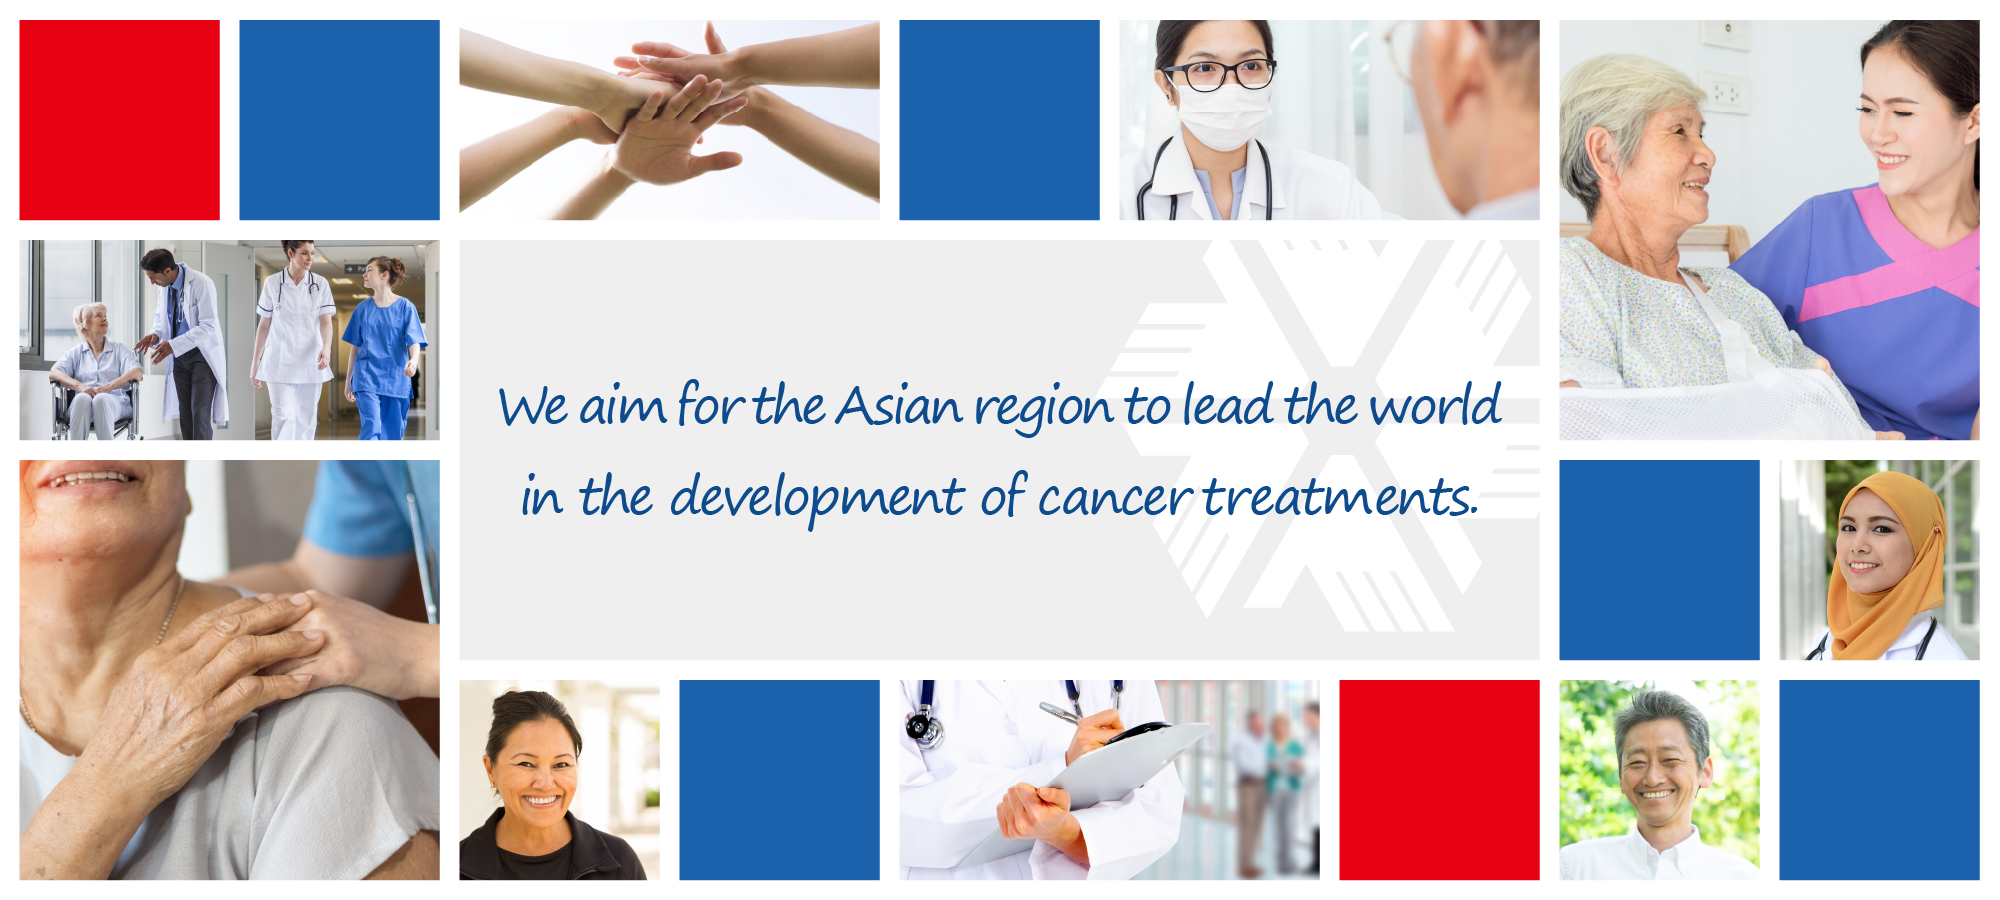 Kami bertujuan agar kawasan Asia memimpin dunia dalam pengembangan pengobatan kanker.